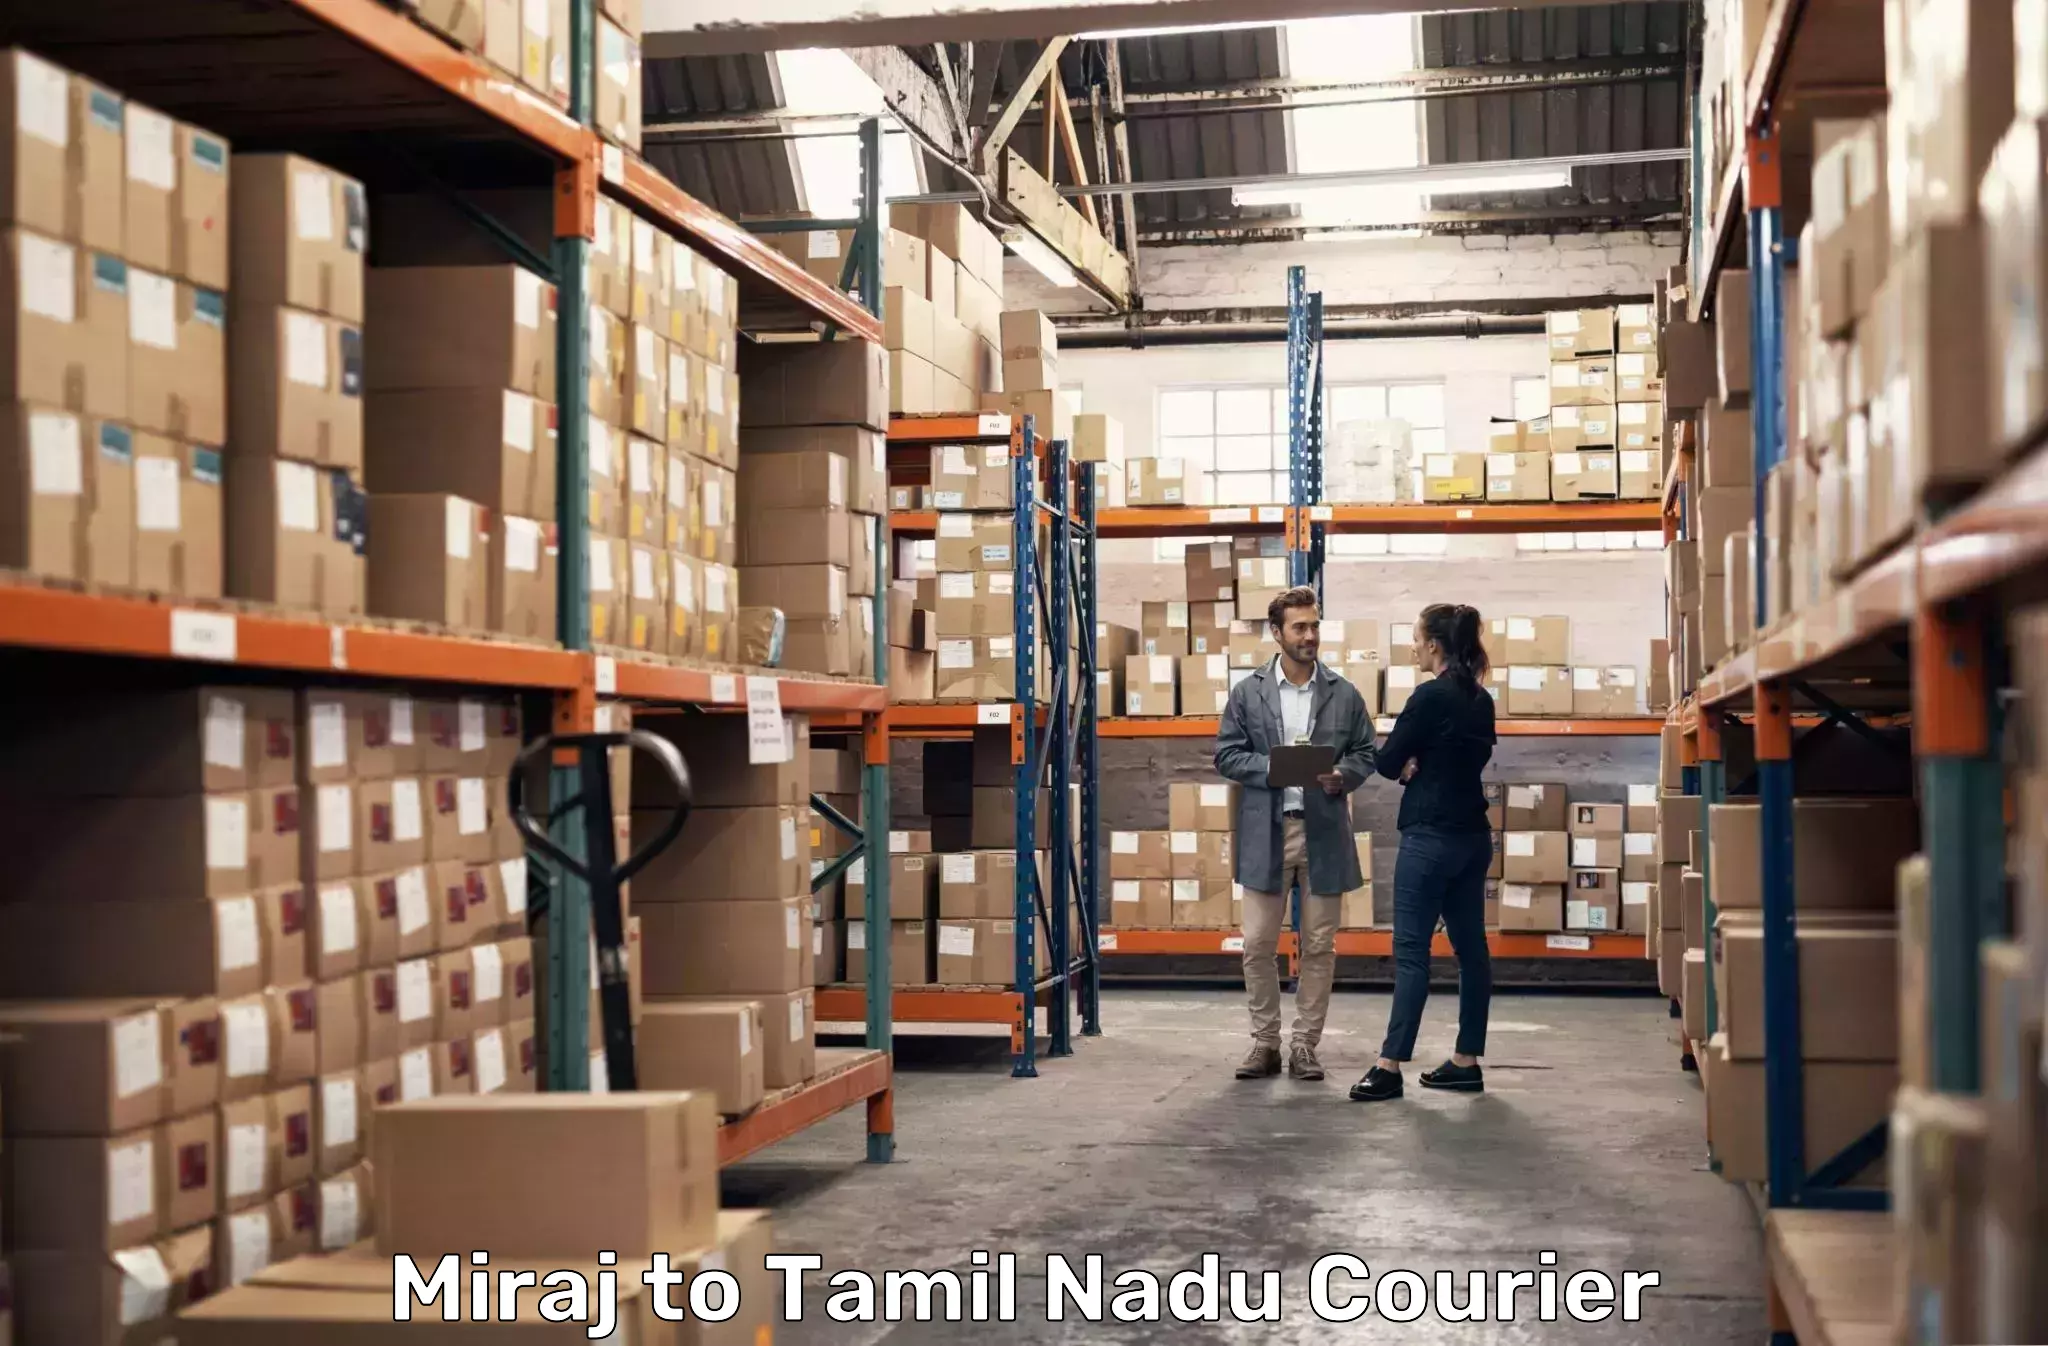 High-performance logistics Miraj to Tamil Nadu